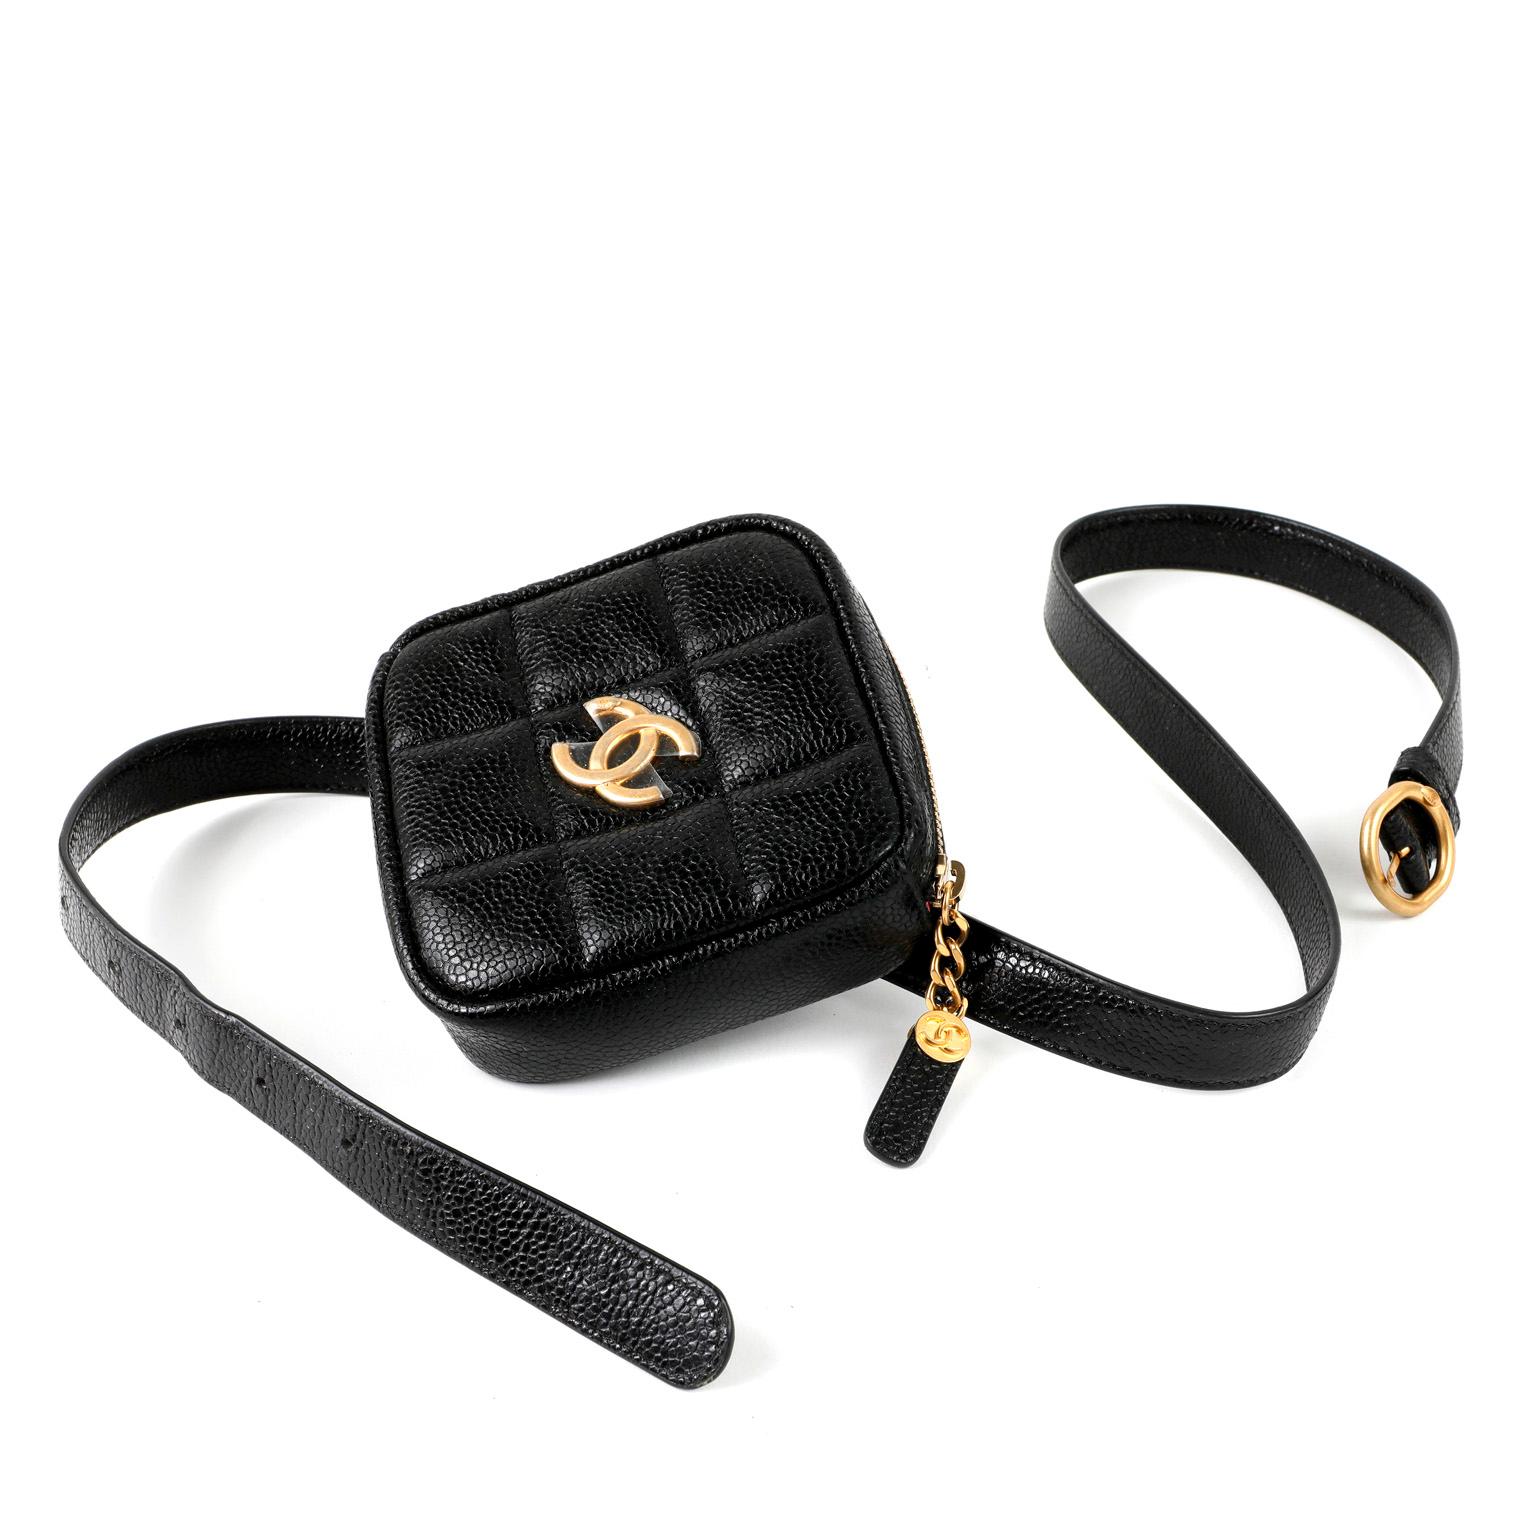 Cet authentique sac à ceinture en cuir noir Caviar de Chanel est en parfait état et n'a jamais été porté.  Pochette carrée noire à fermeture éclair en cuir de caviar glacé texturé durable, fixée à une ceinture coordonnée.  Matériel de couleur or. 